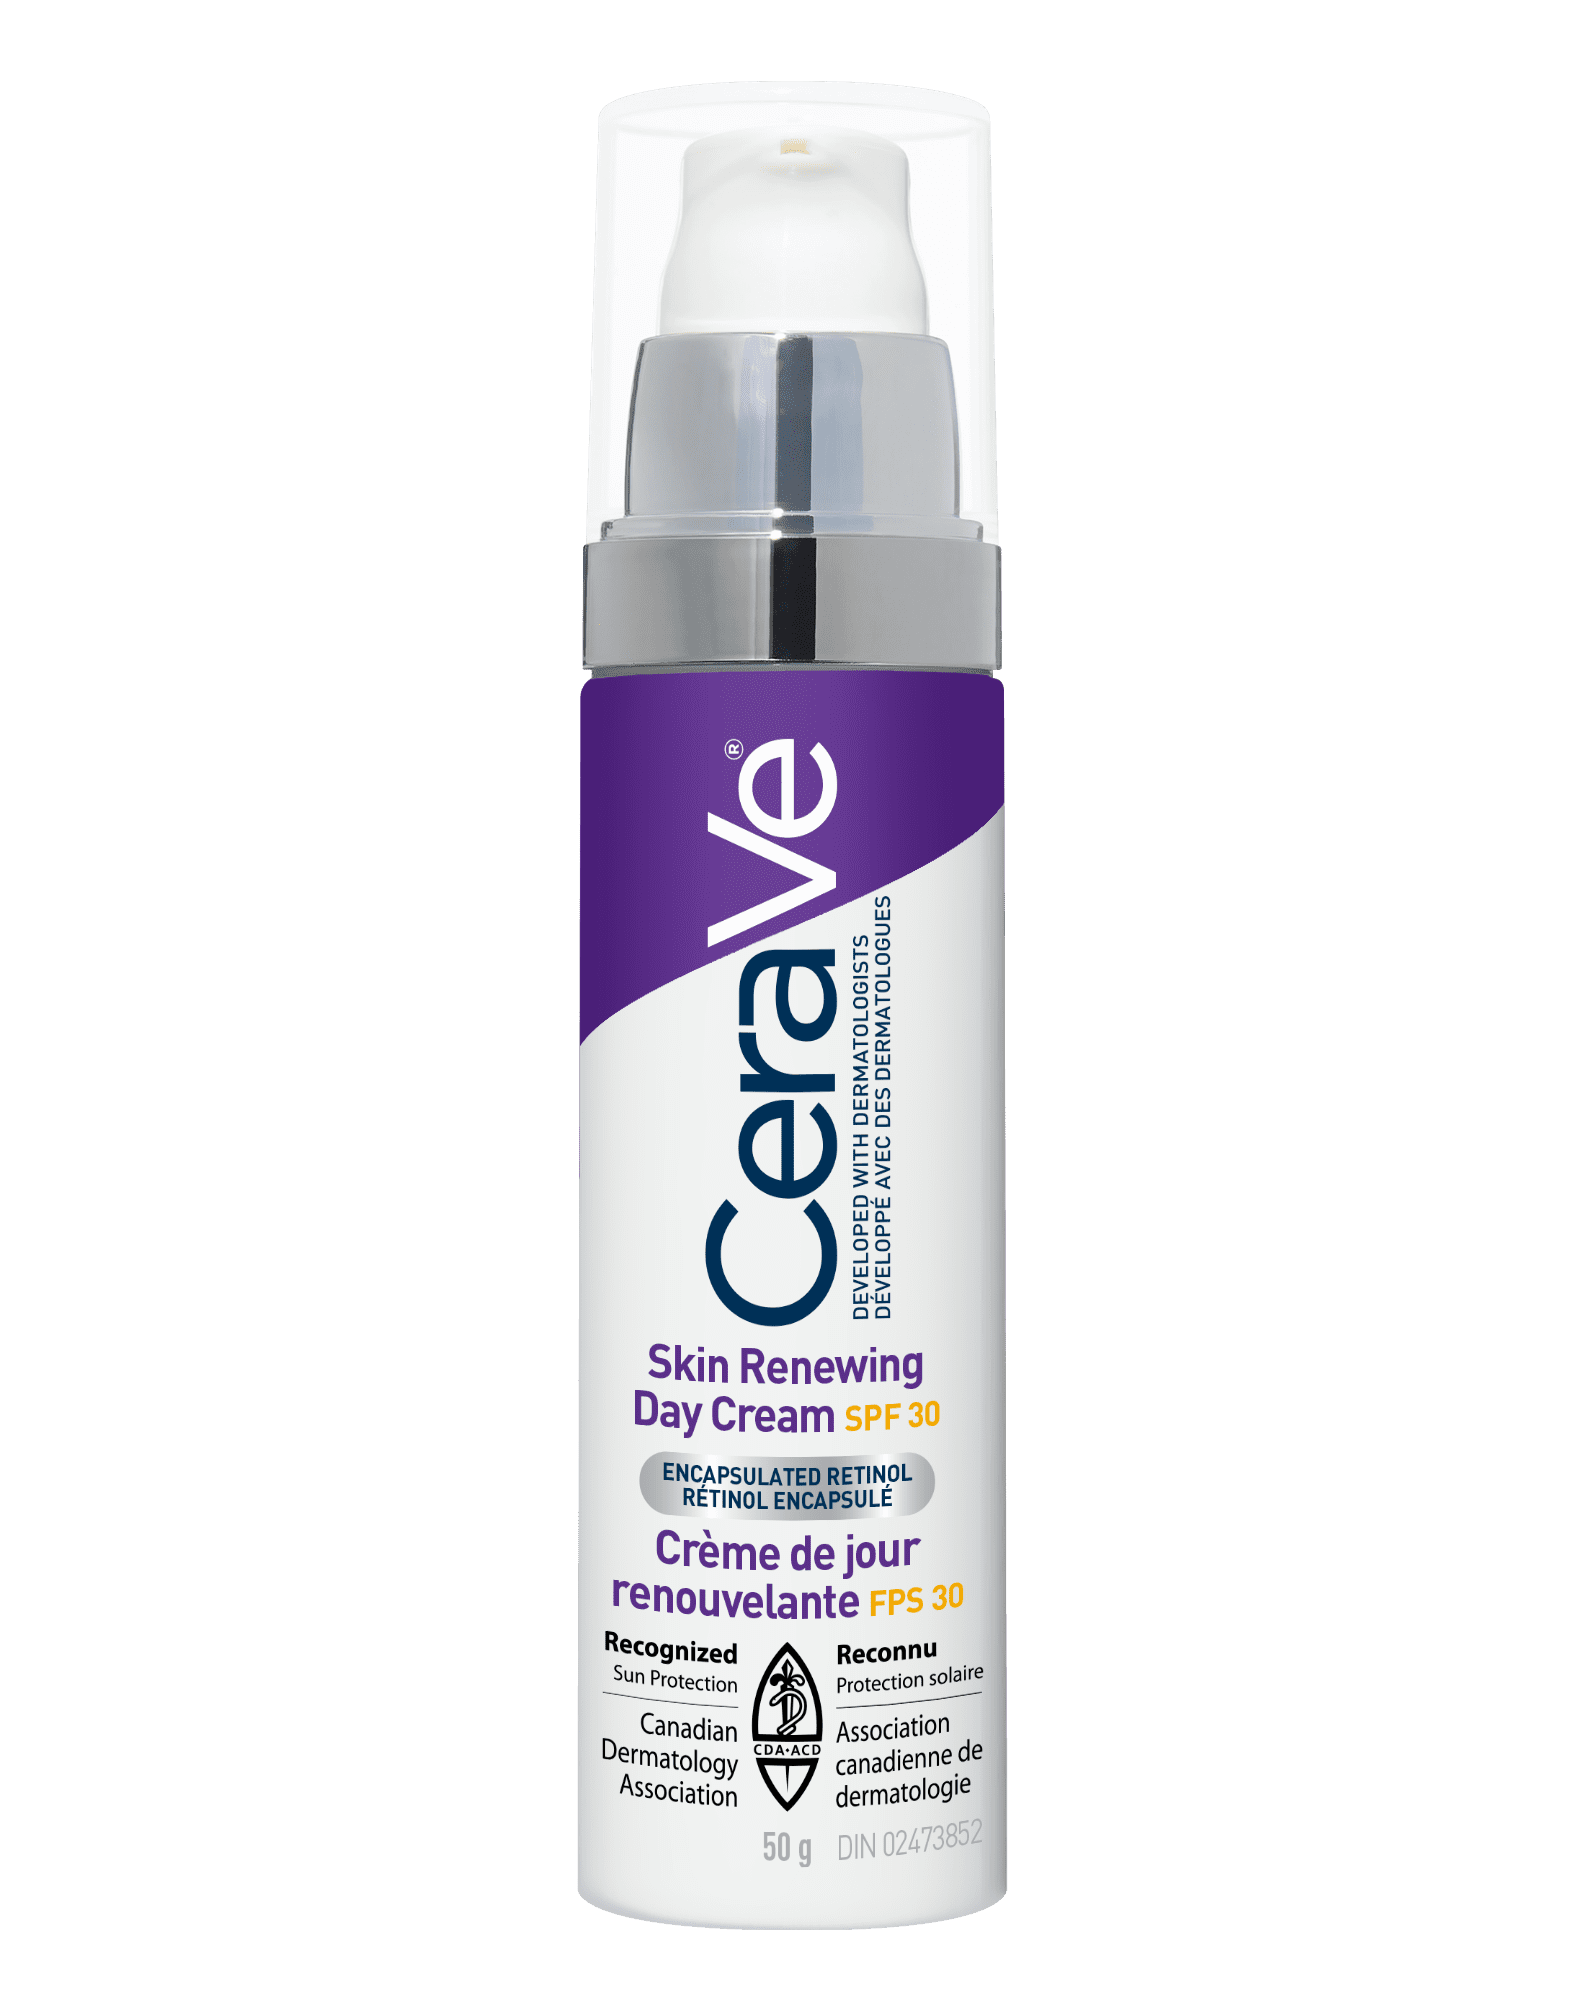 Crème de nuit régénératrice pour la peau CeraVe 48g 